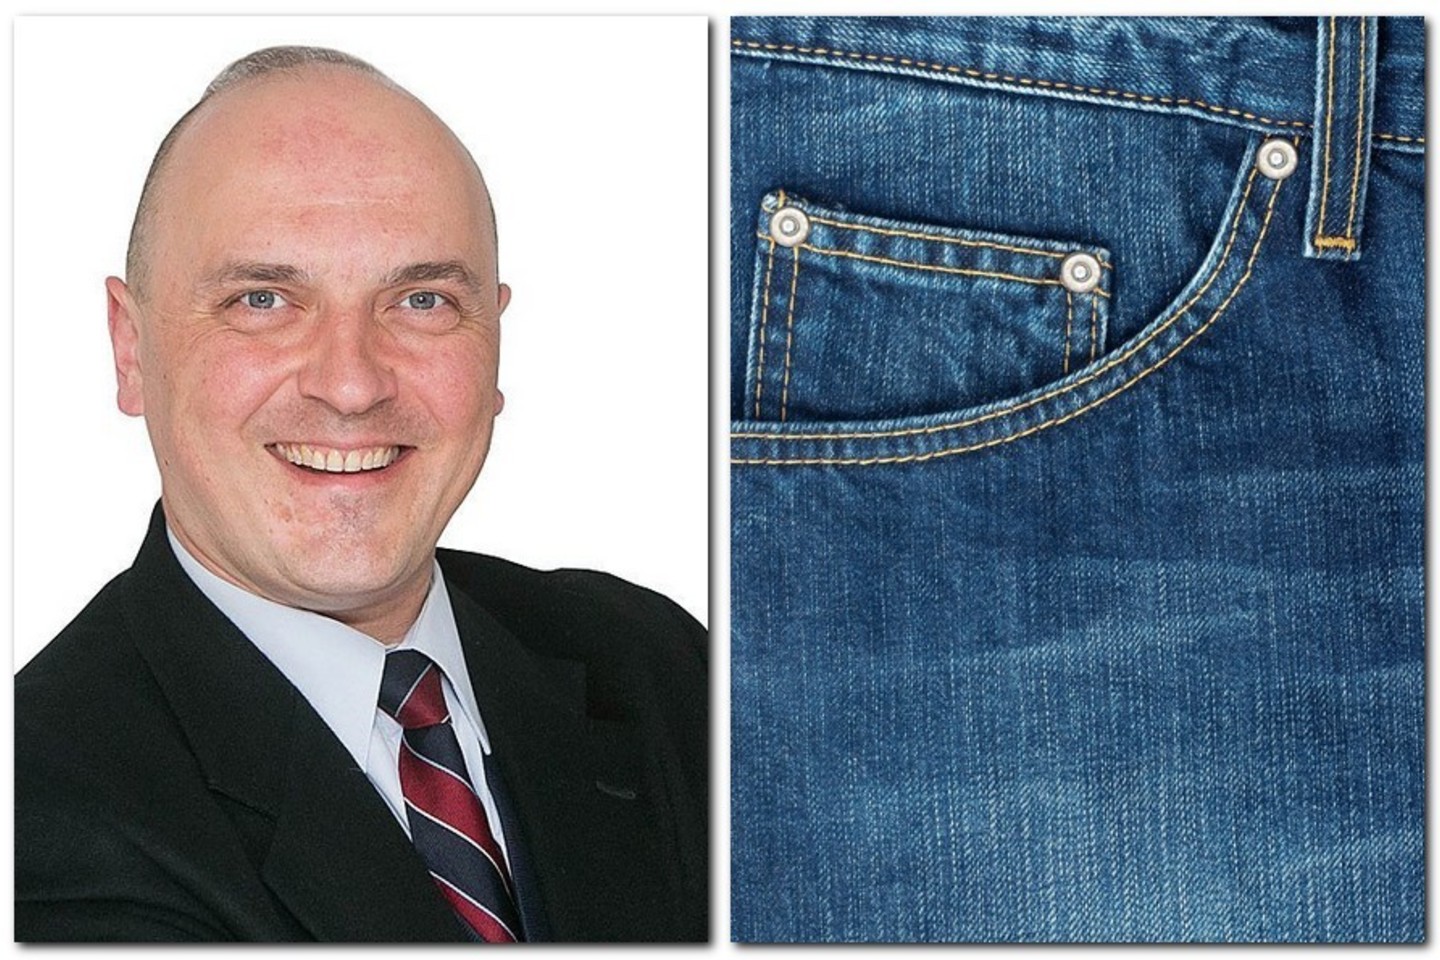 G.Drukteinis įminė mįslę, kam gi skirta mažoji džinsų kišenėlė.<br>„123rf.com“ nuotr.